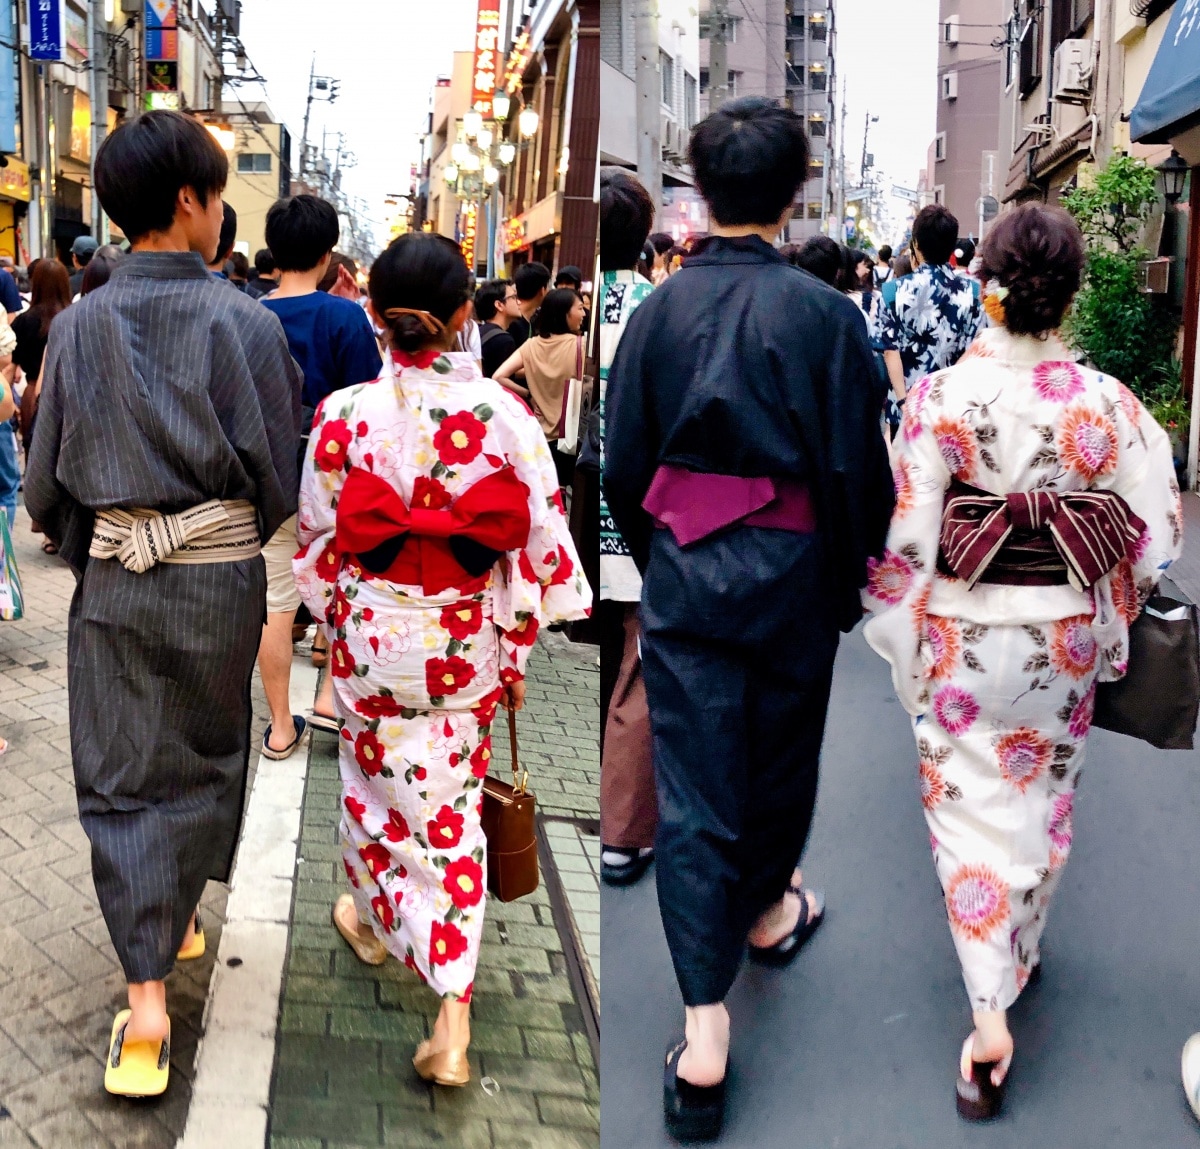 日本浴衣文化知多少 少了花火的渲染 今夏還是要穿上浴衣美一下 All About Japan